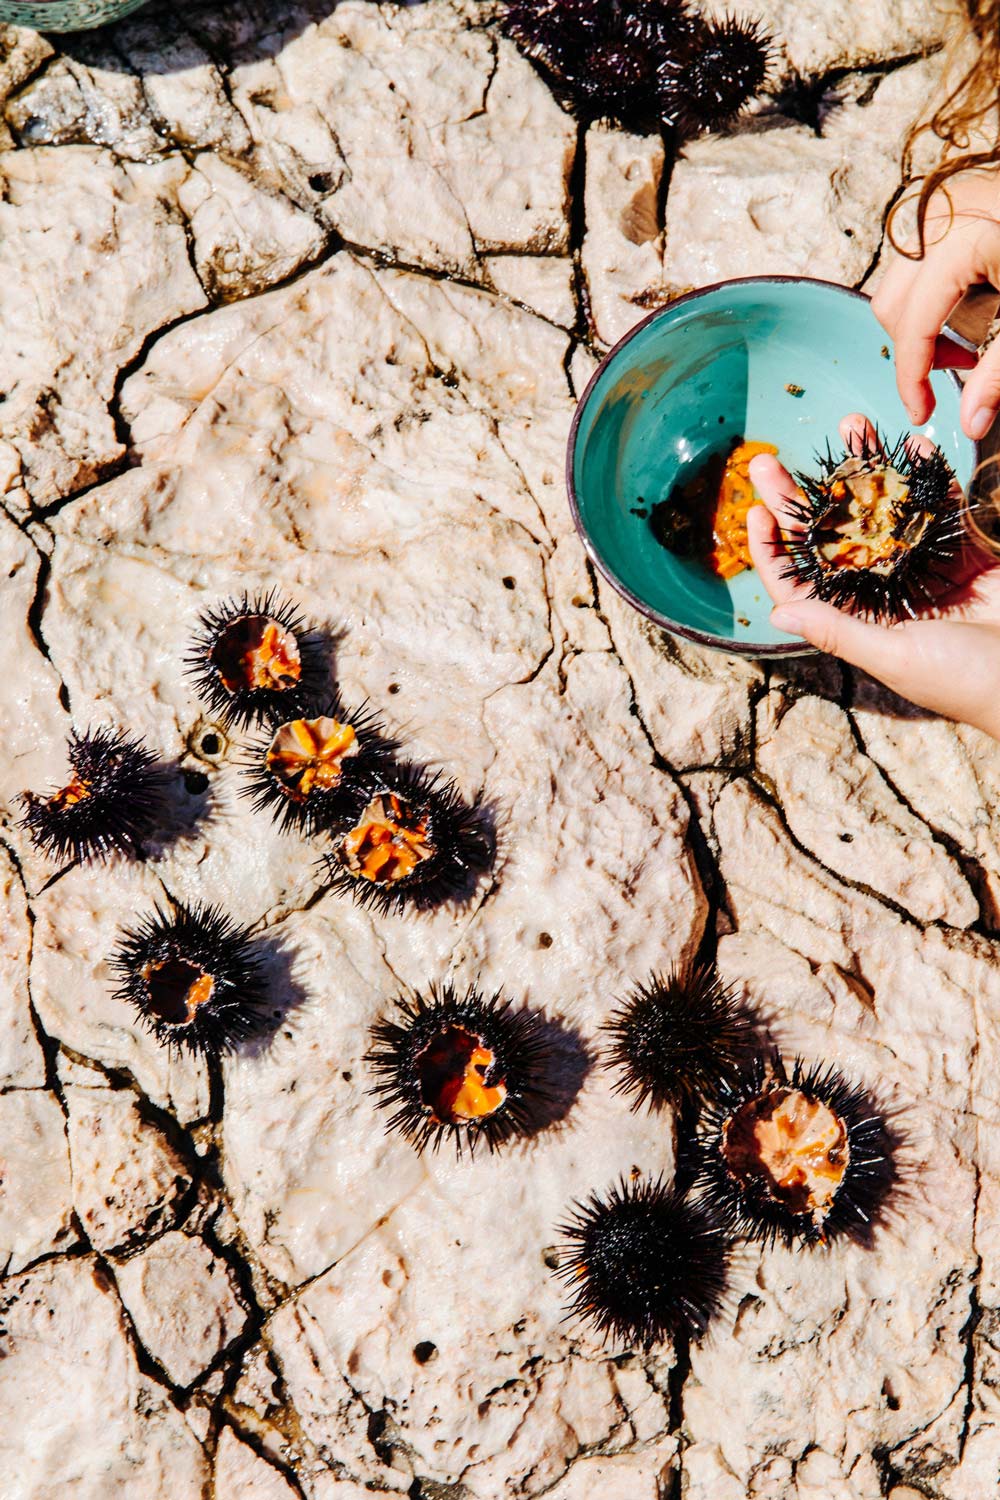 Gathered sea urchins